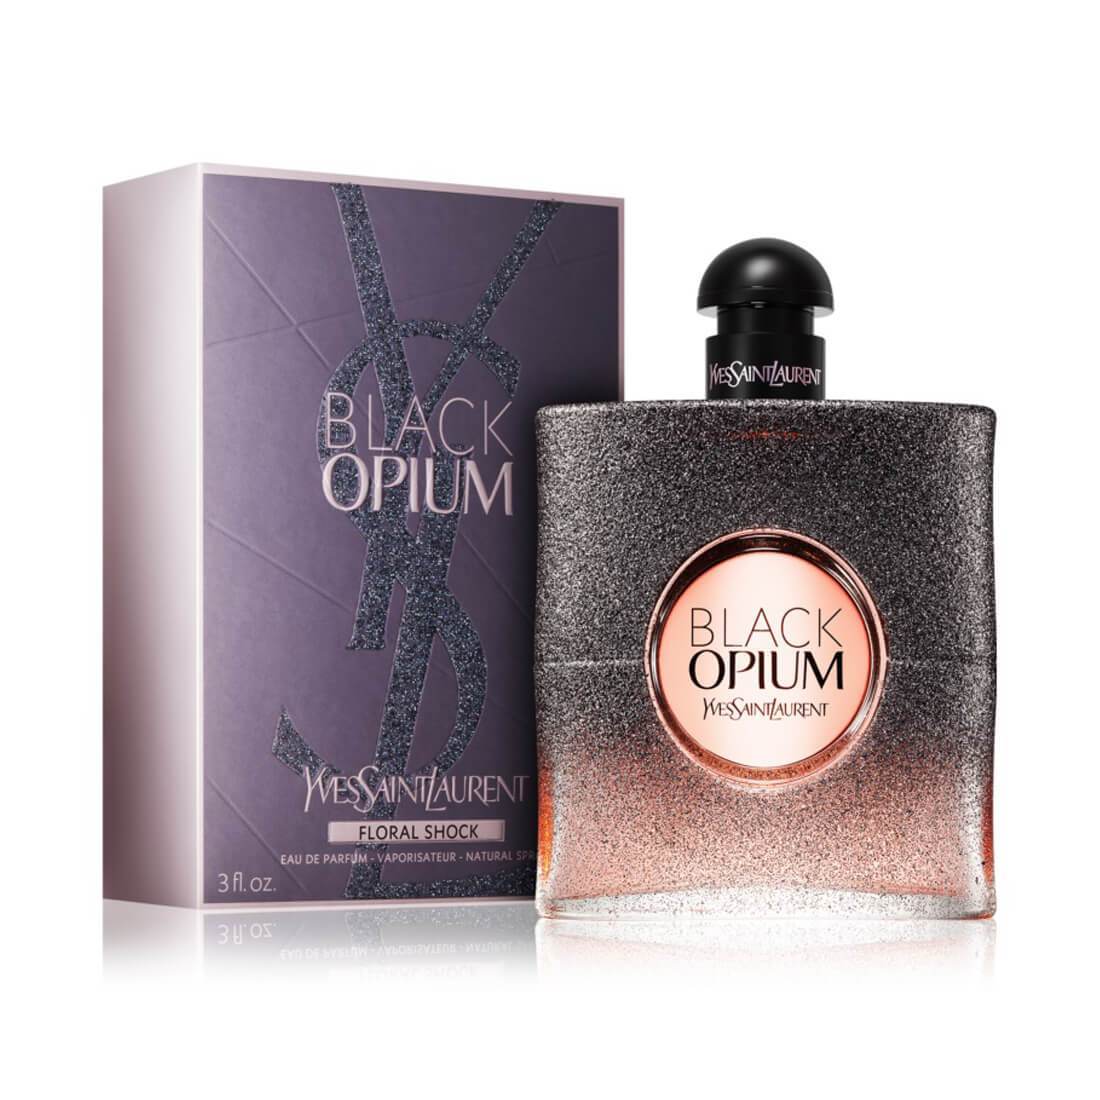 Yves Saint Laurent Black Opium Floral Shock Edp Perfume For Women - 90Ml